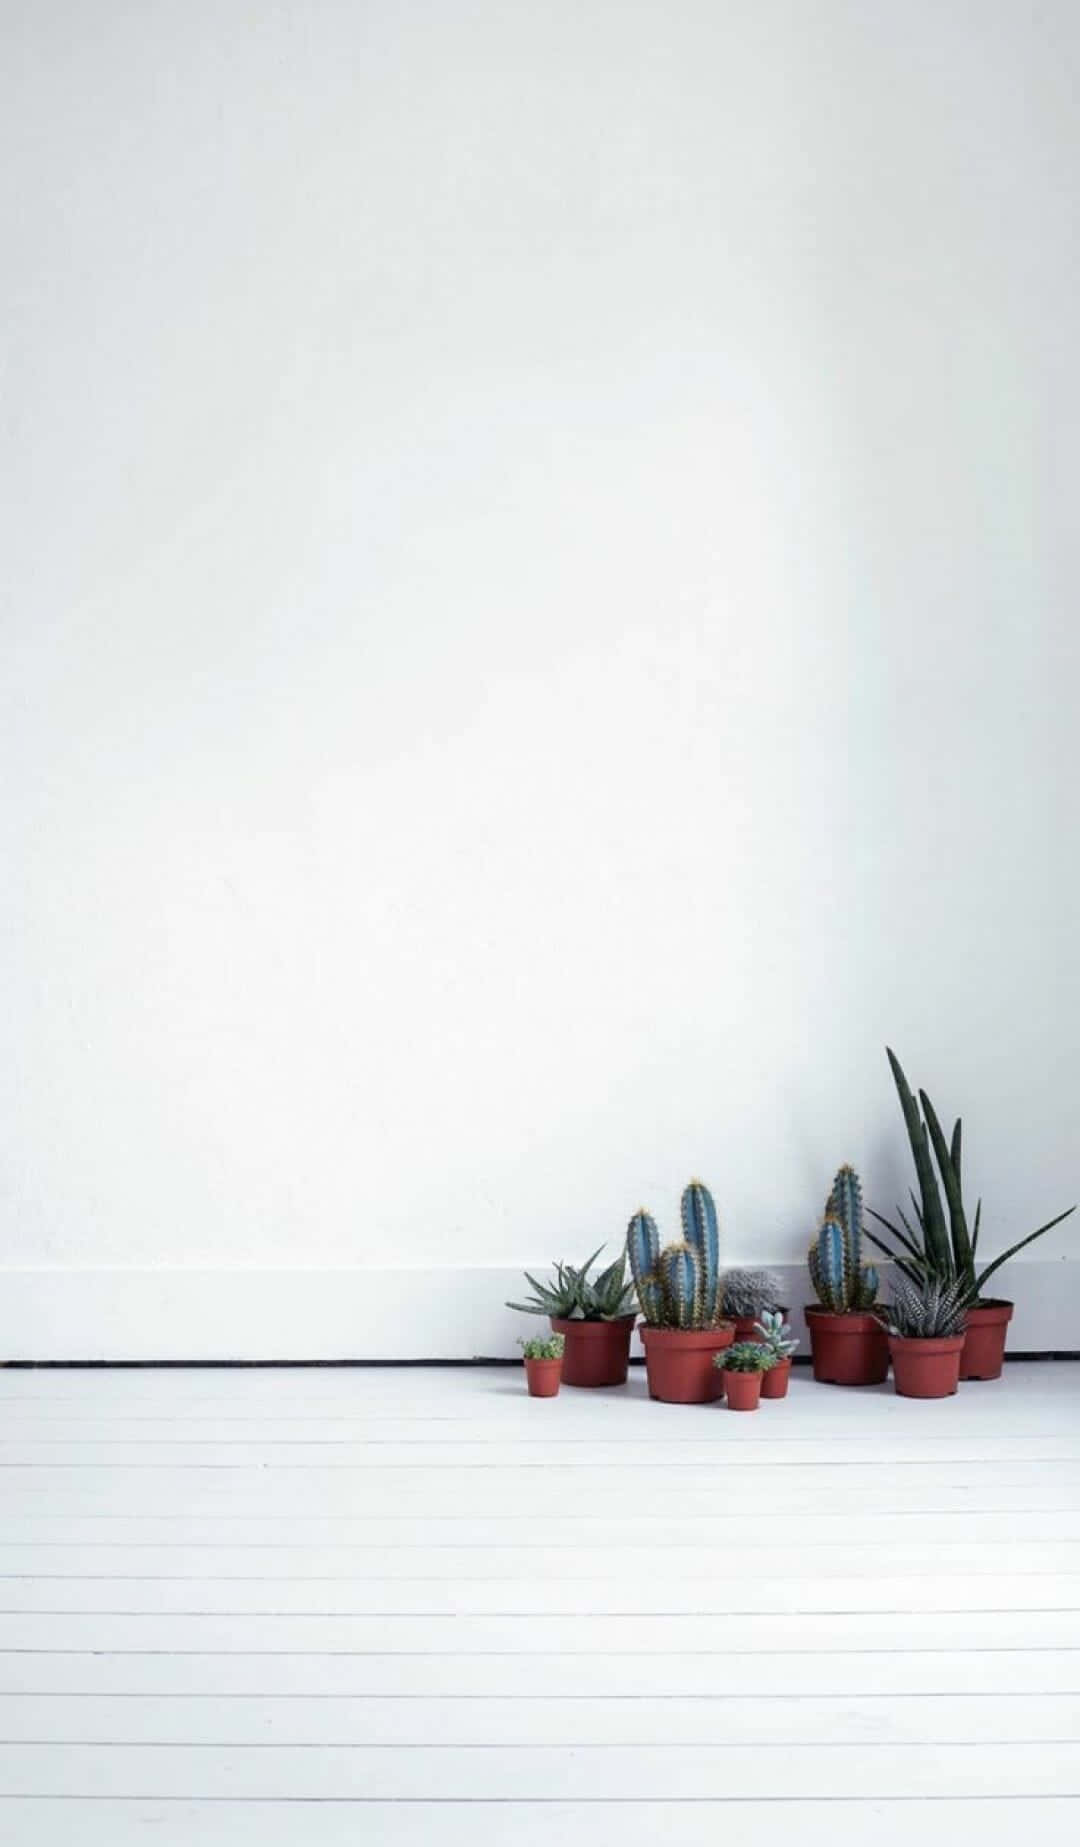 Kakteenpflanzenauf Weißem Boden Wallpaper